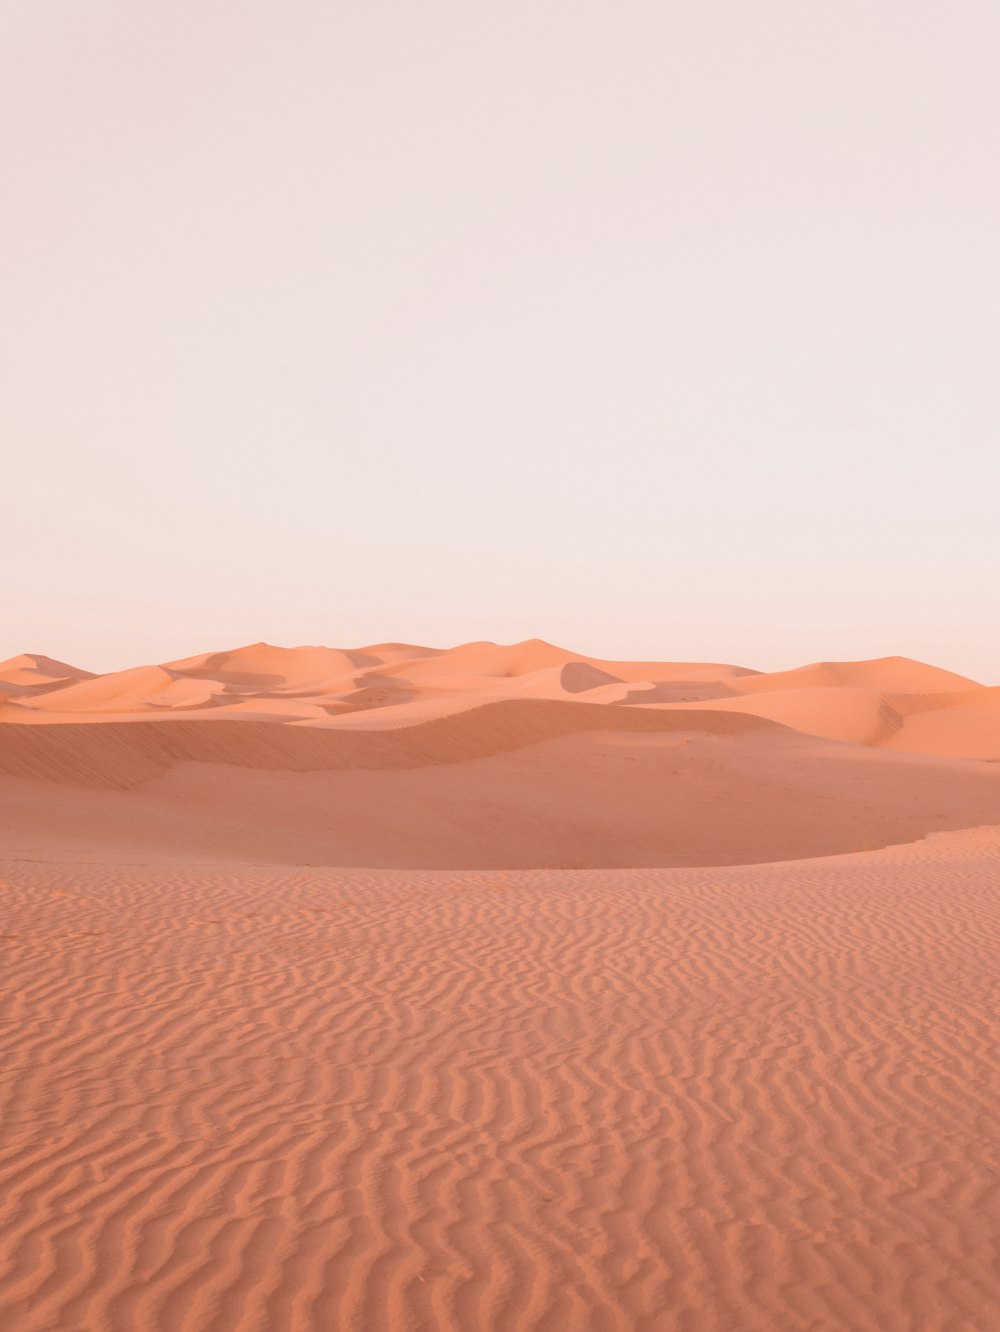 brown desert under white sky during daytime